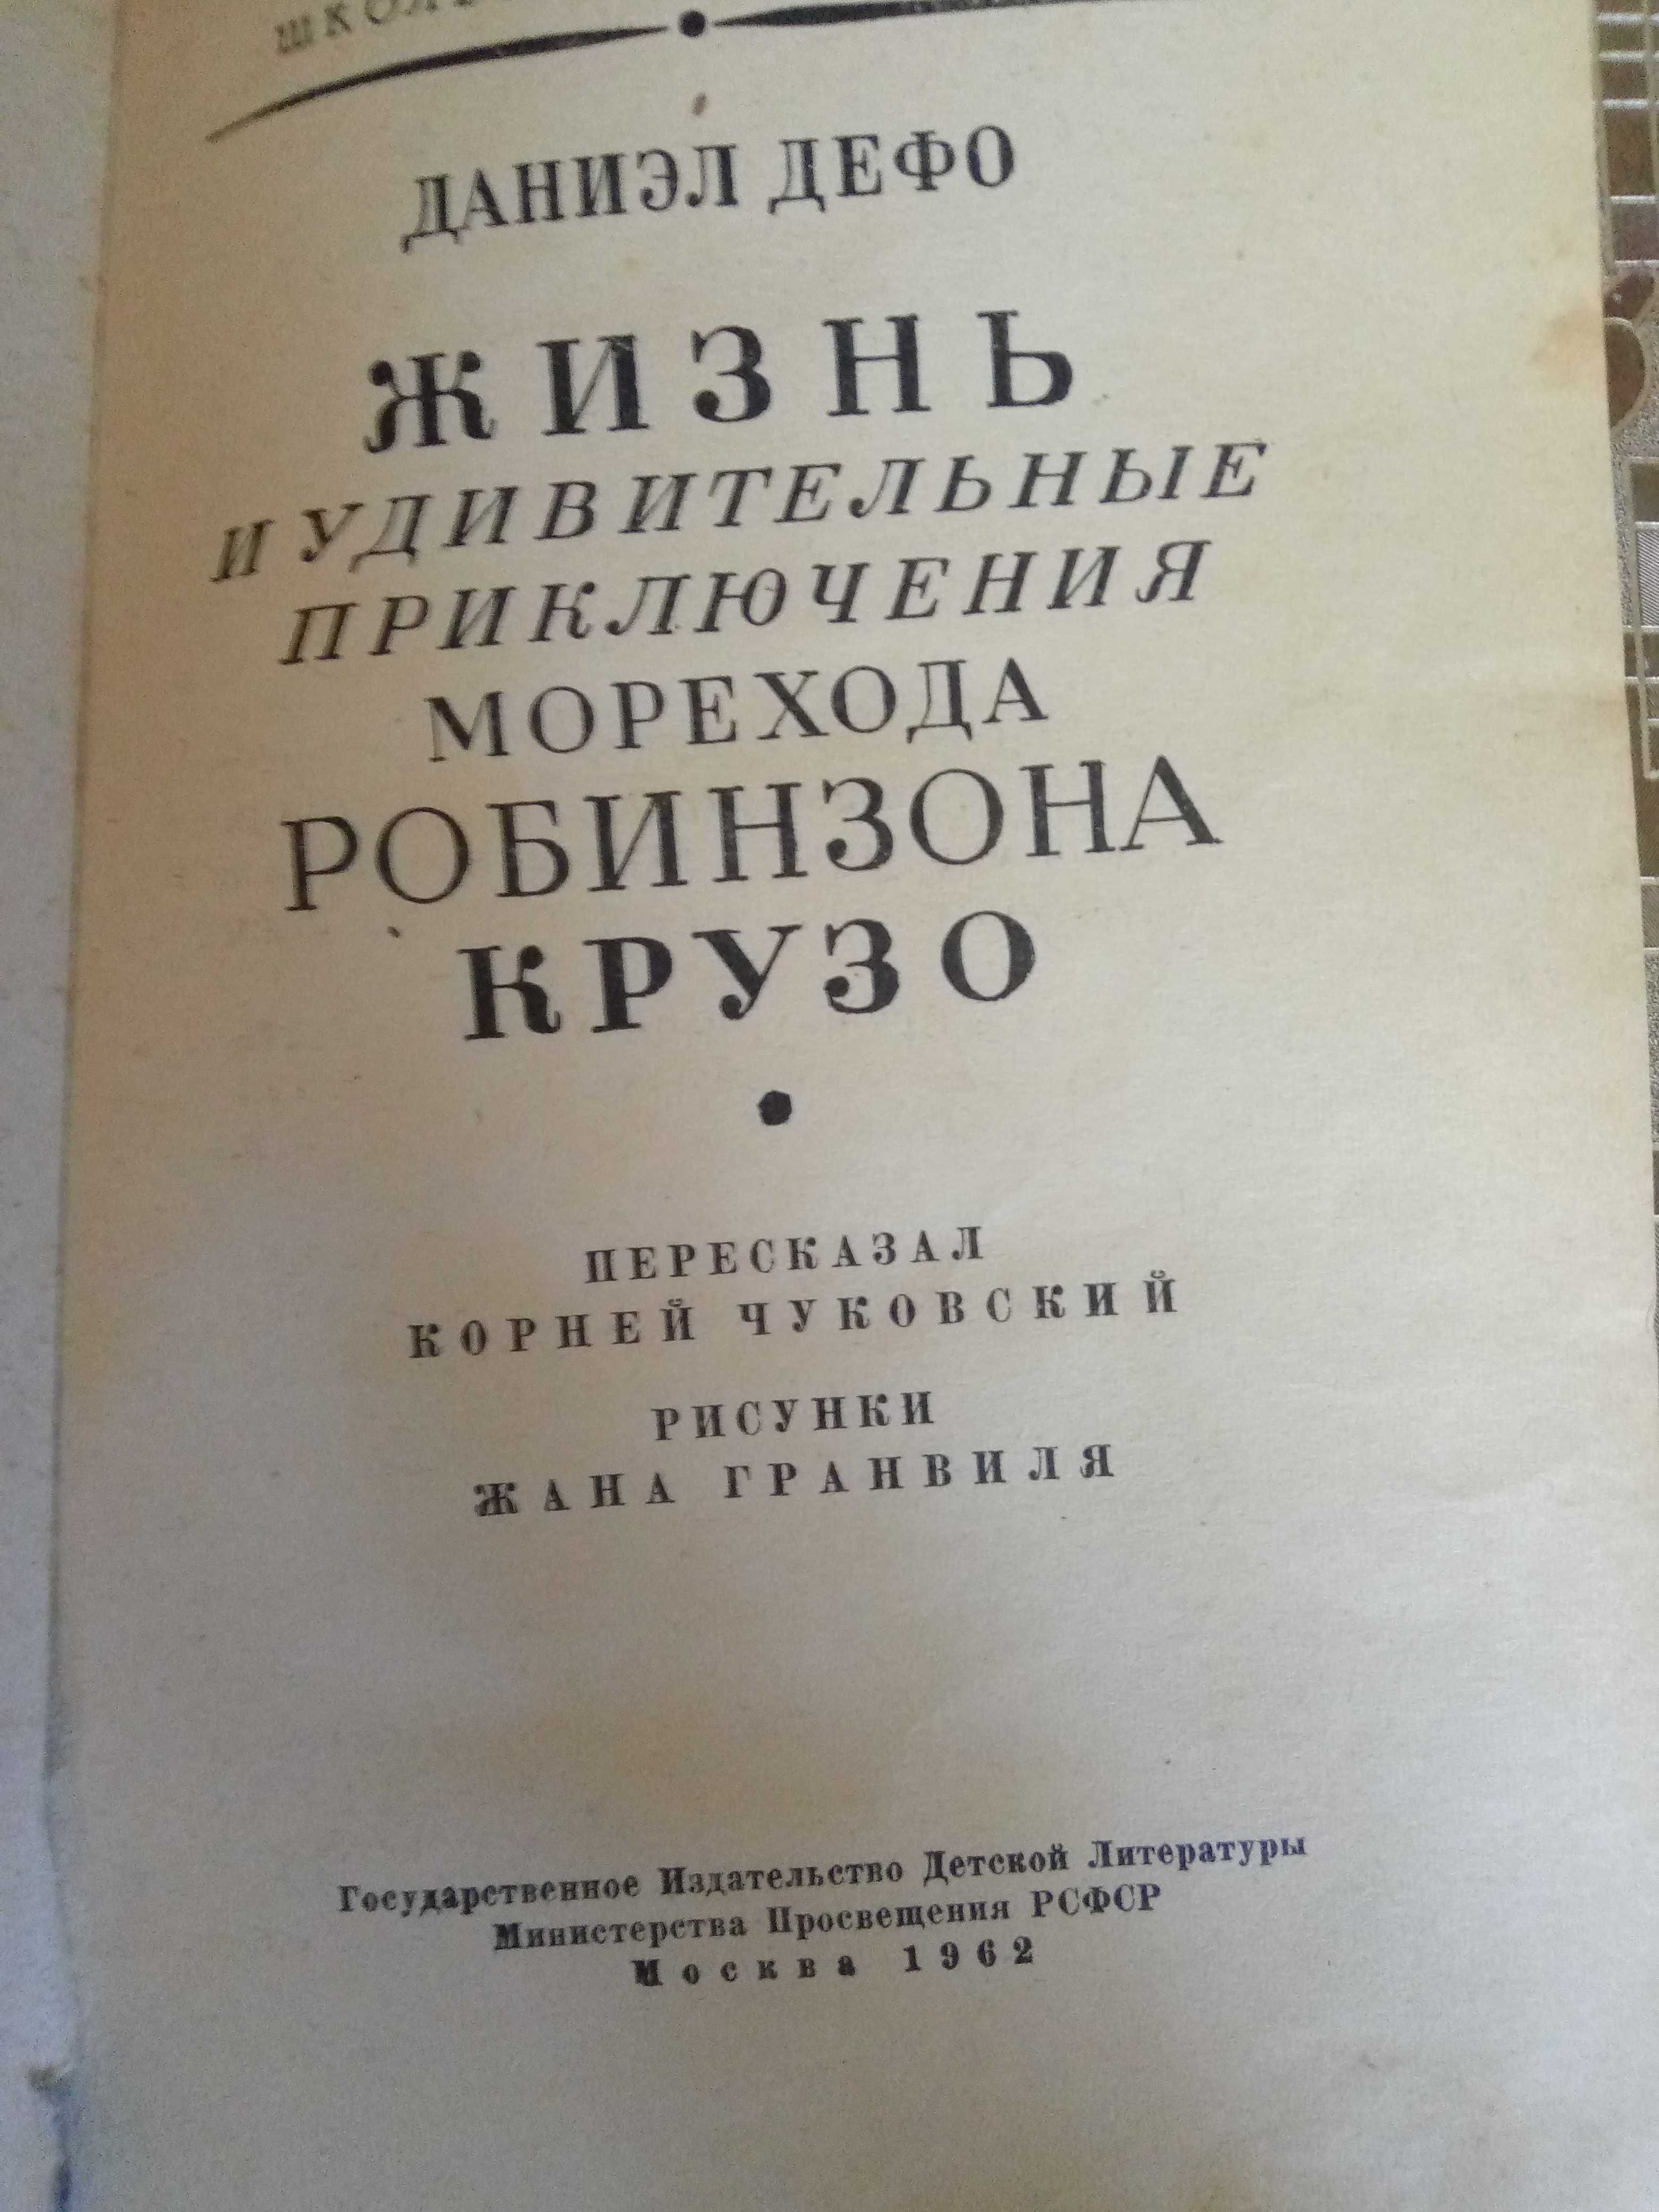 Редкая книга Д. Дефо "Робинзон Крузо",1962